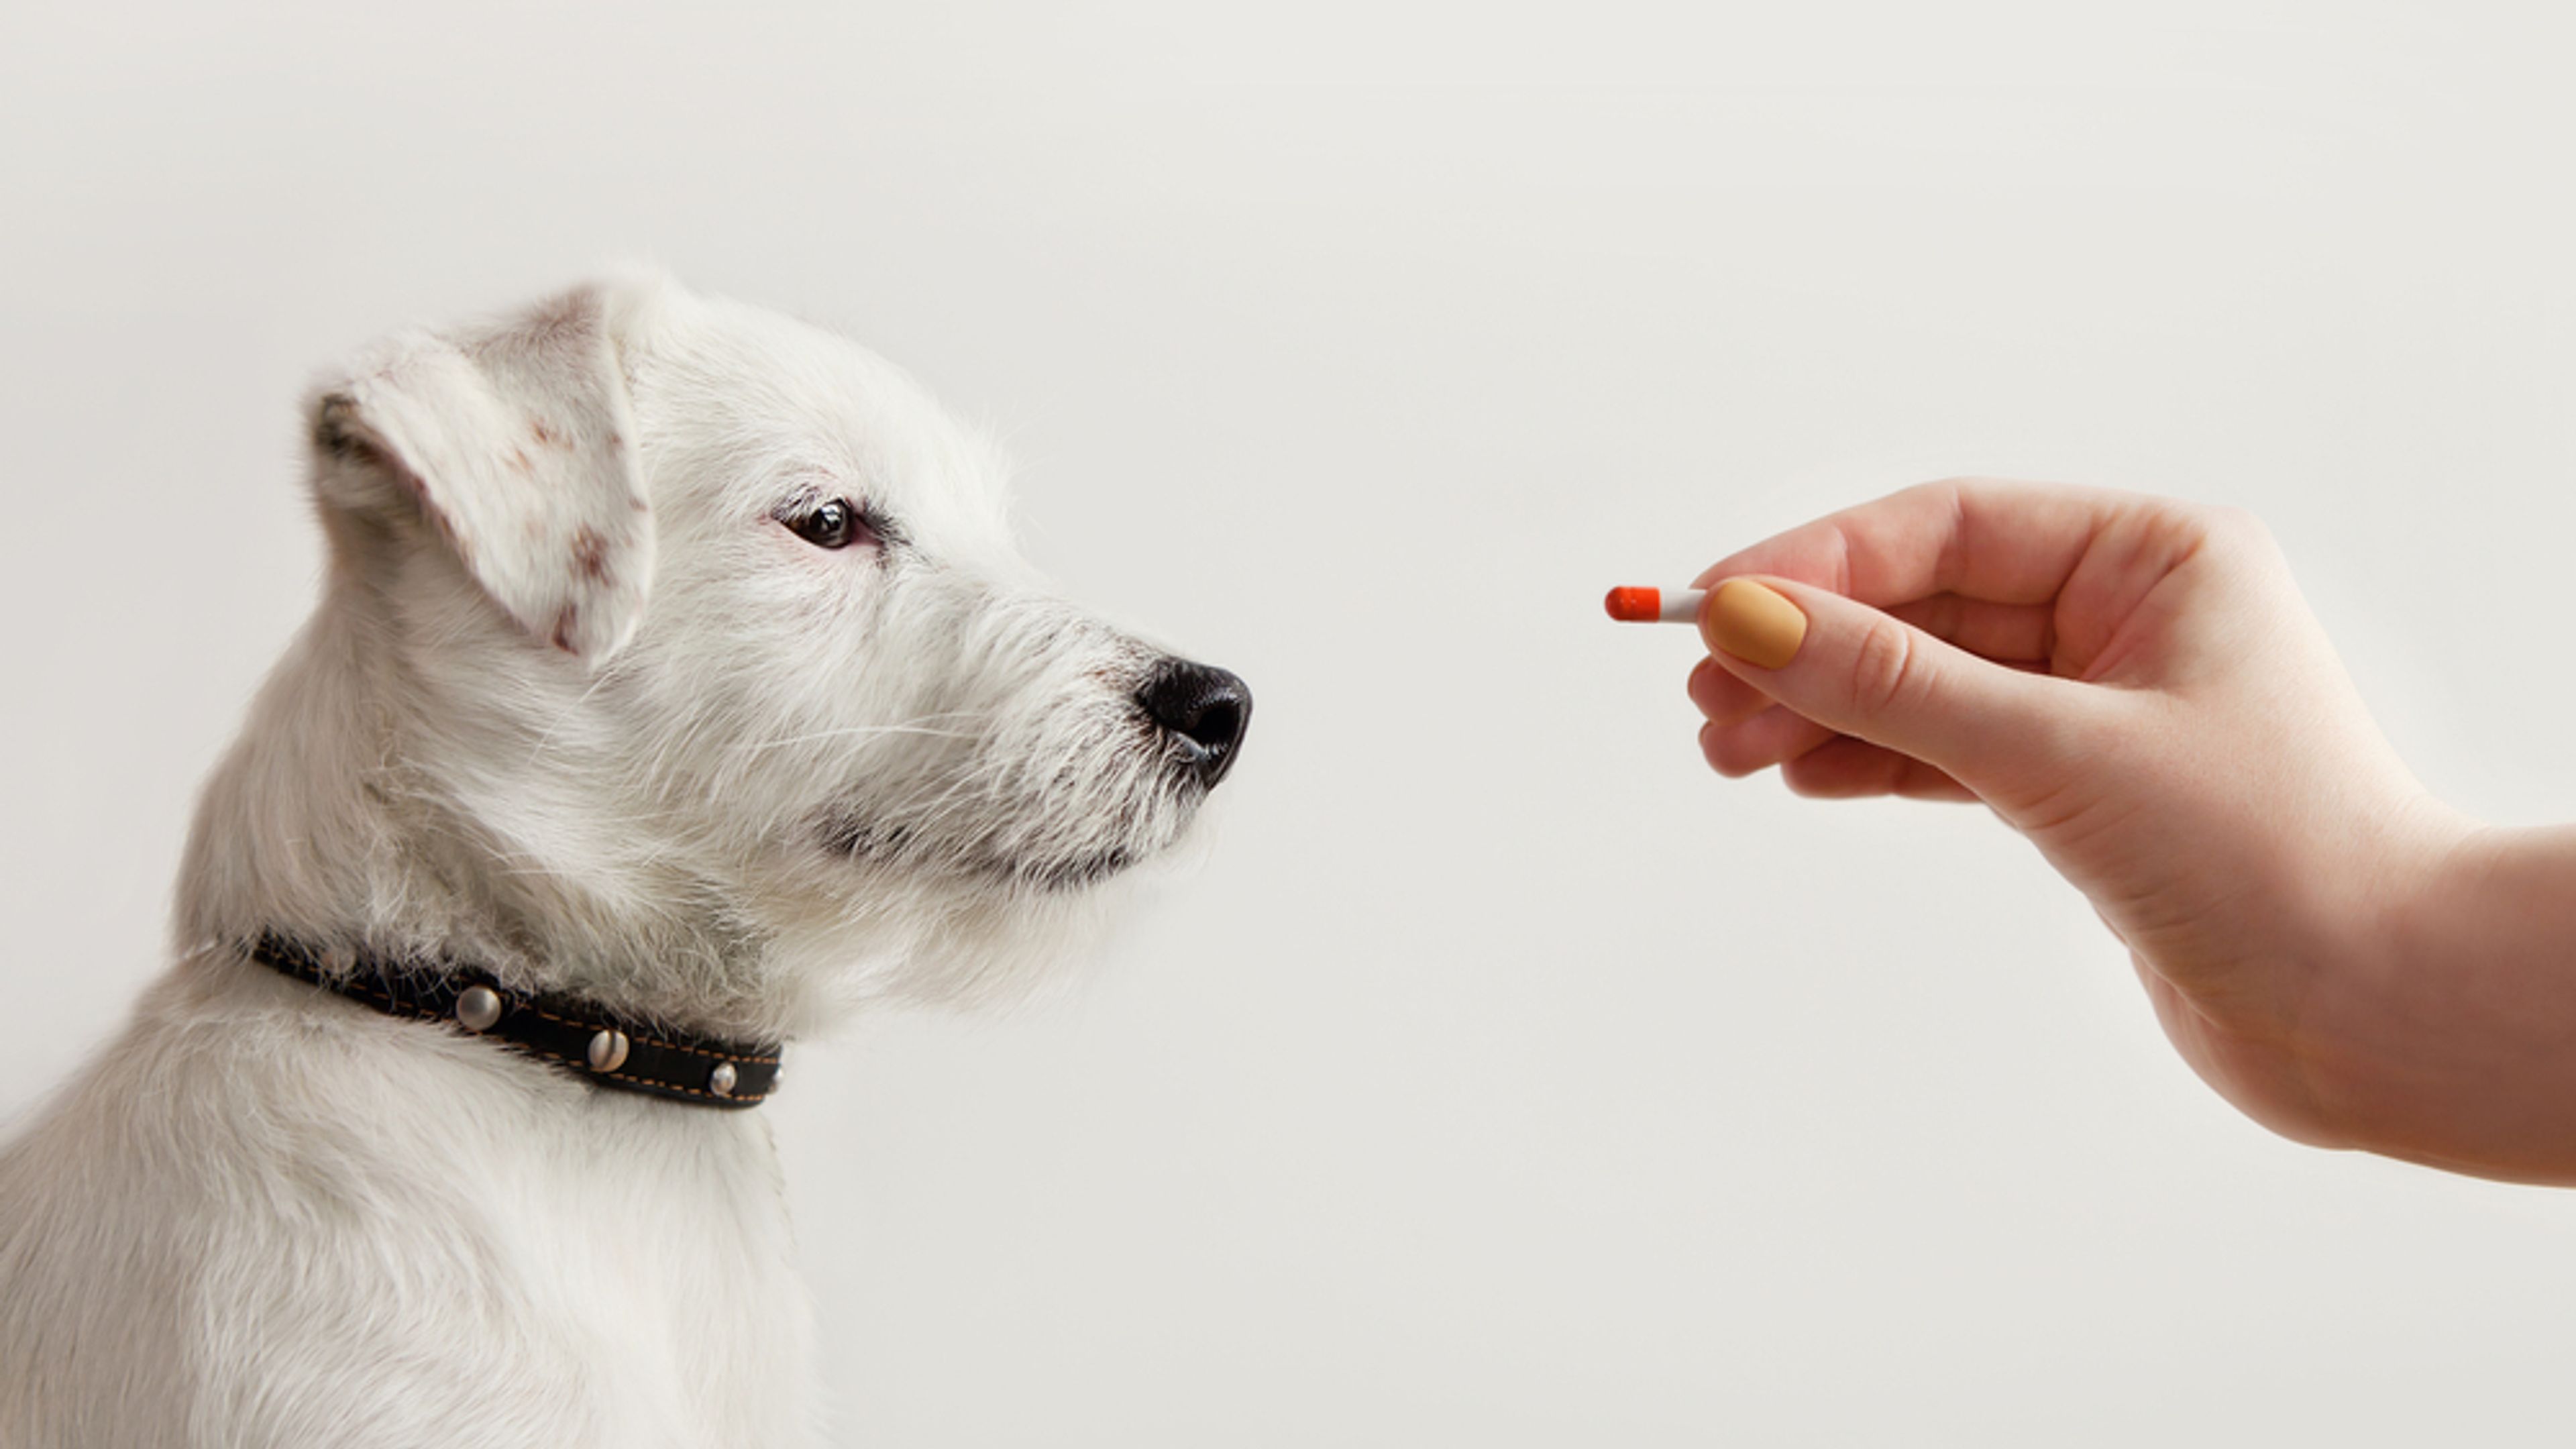 Jack Russell Terrier in attesa di ricevere la pillola dalla mano del proprietario o del medico